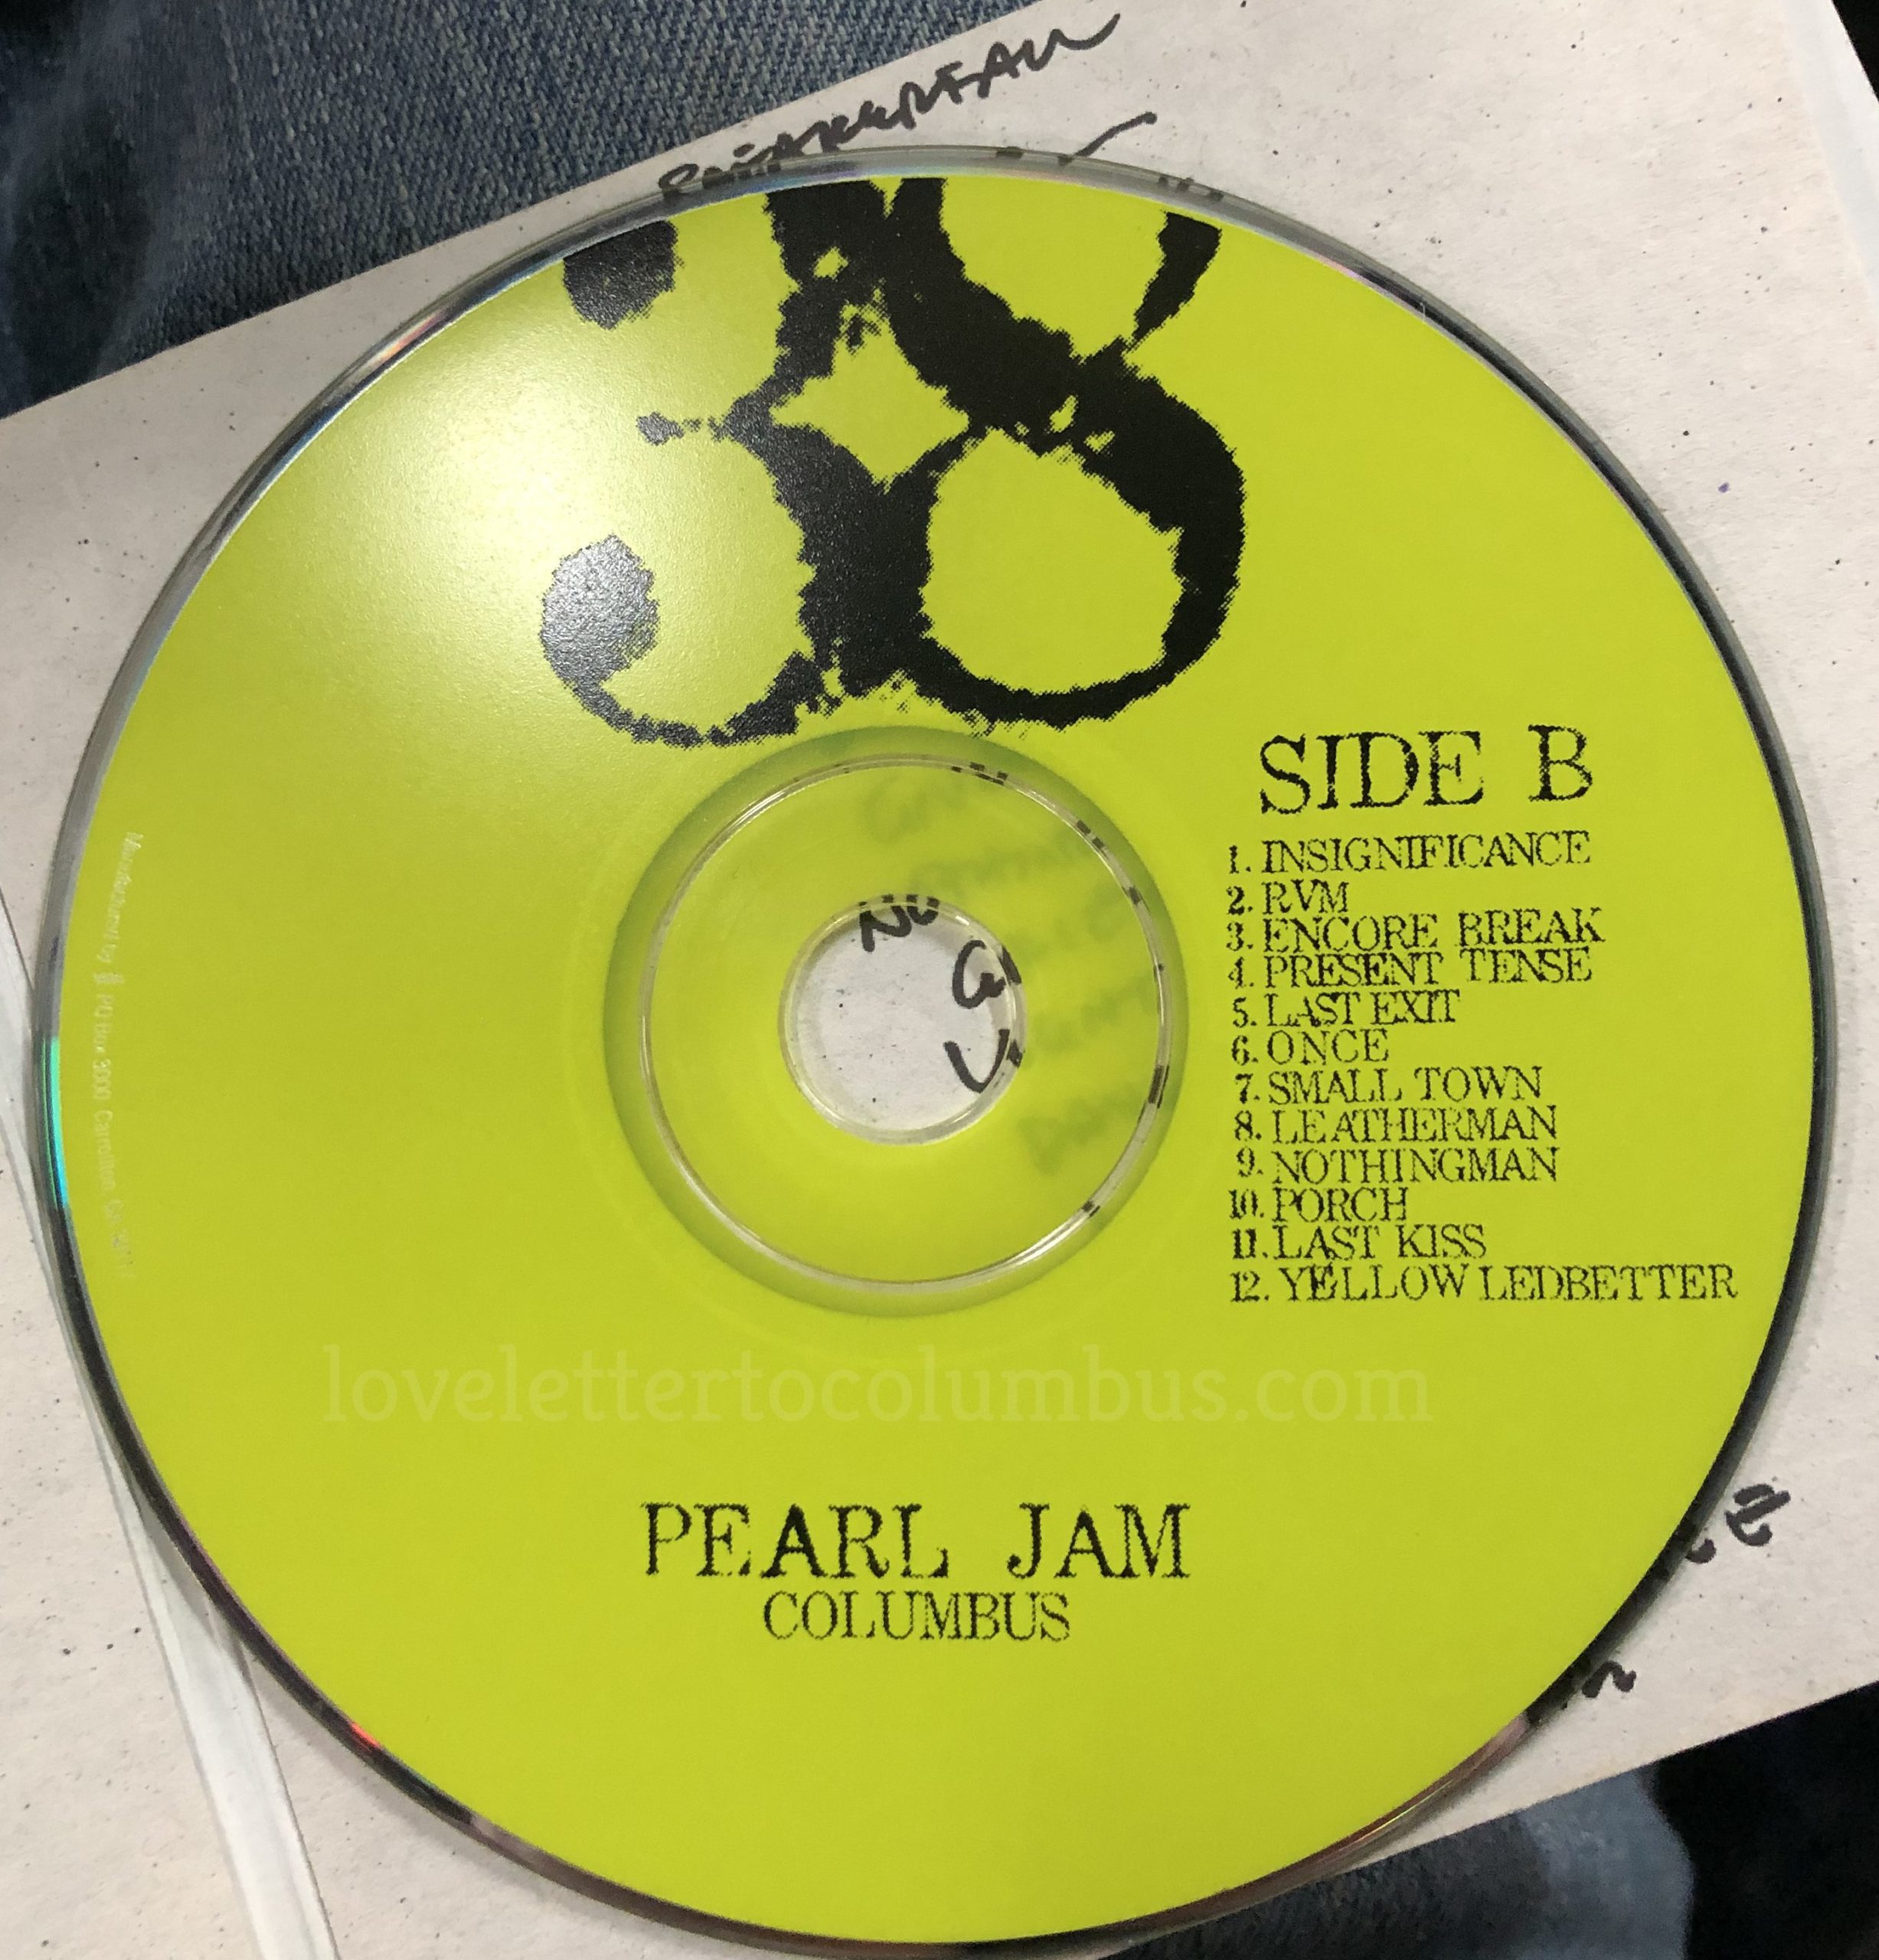 https://lovelettertocolumbus.com/wp-content/uploads/2019/12/Pearl-Jam-8-21-00-side-B-scaled.jpg